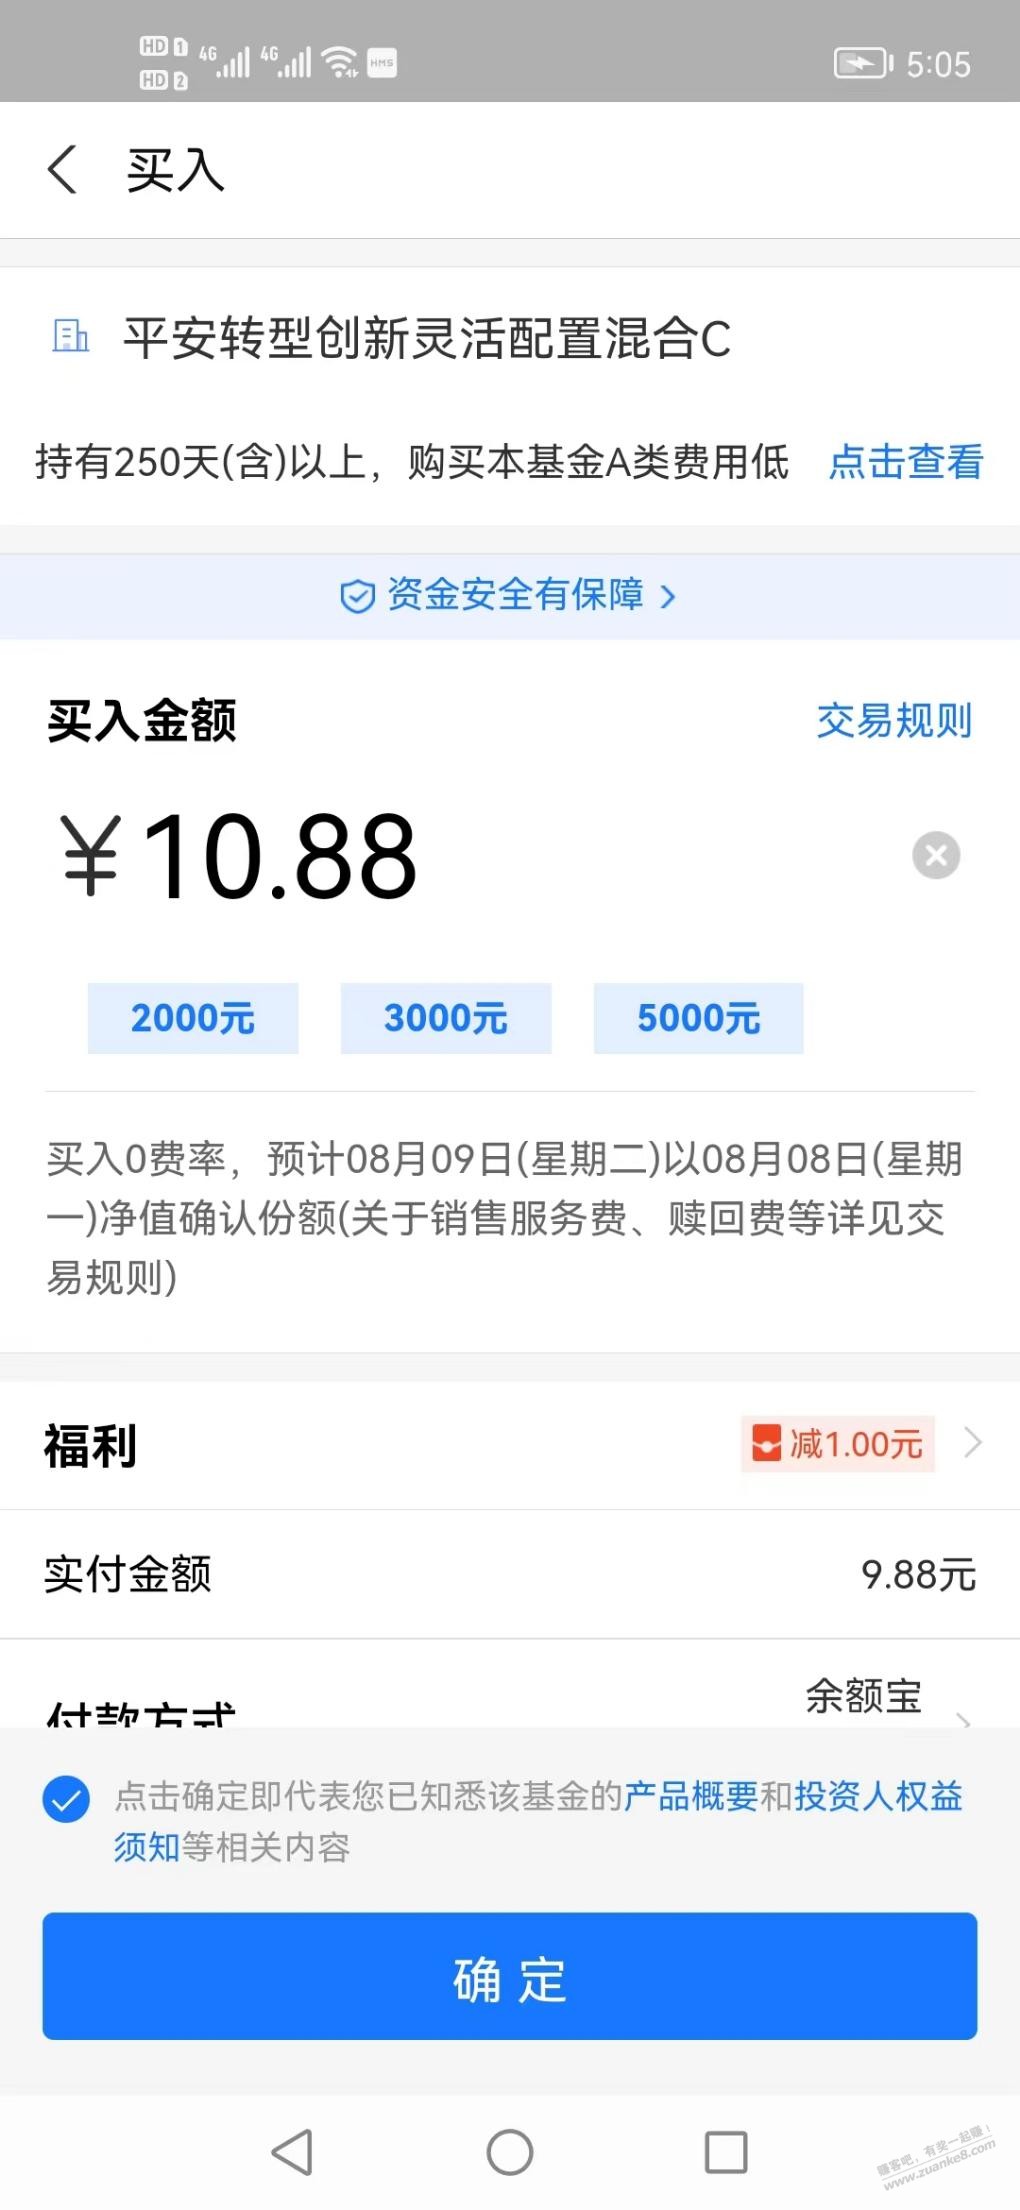 平安基金财富号10.88-1-惠小助(52huixz.com)